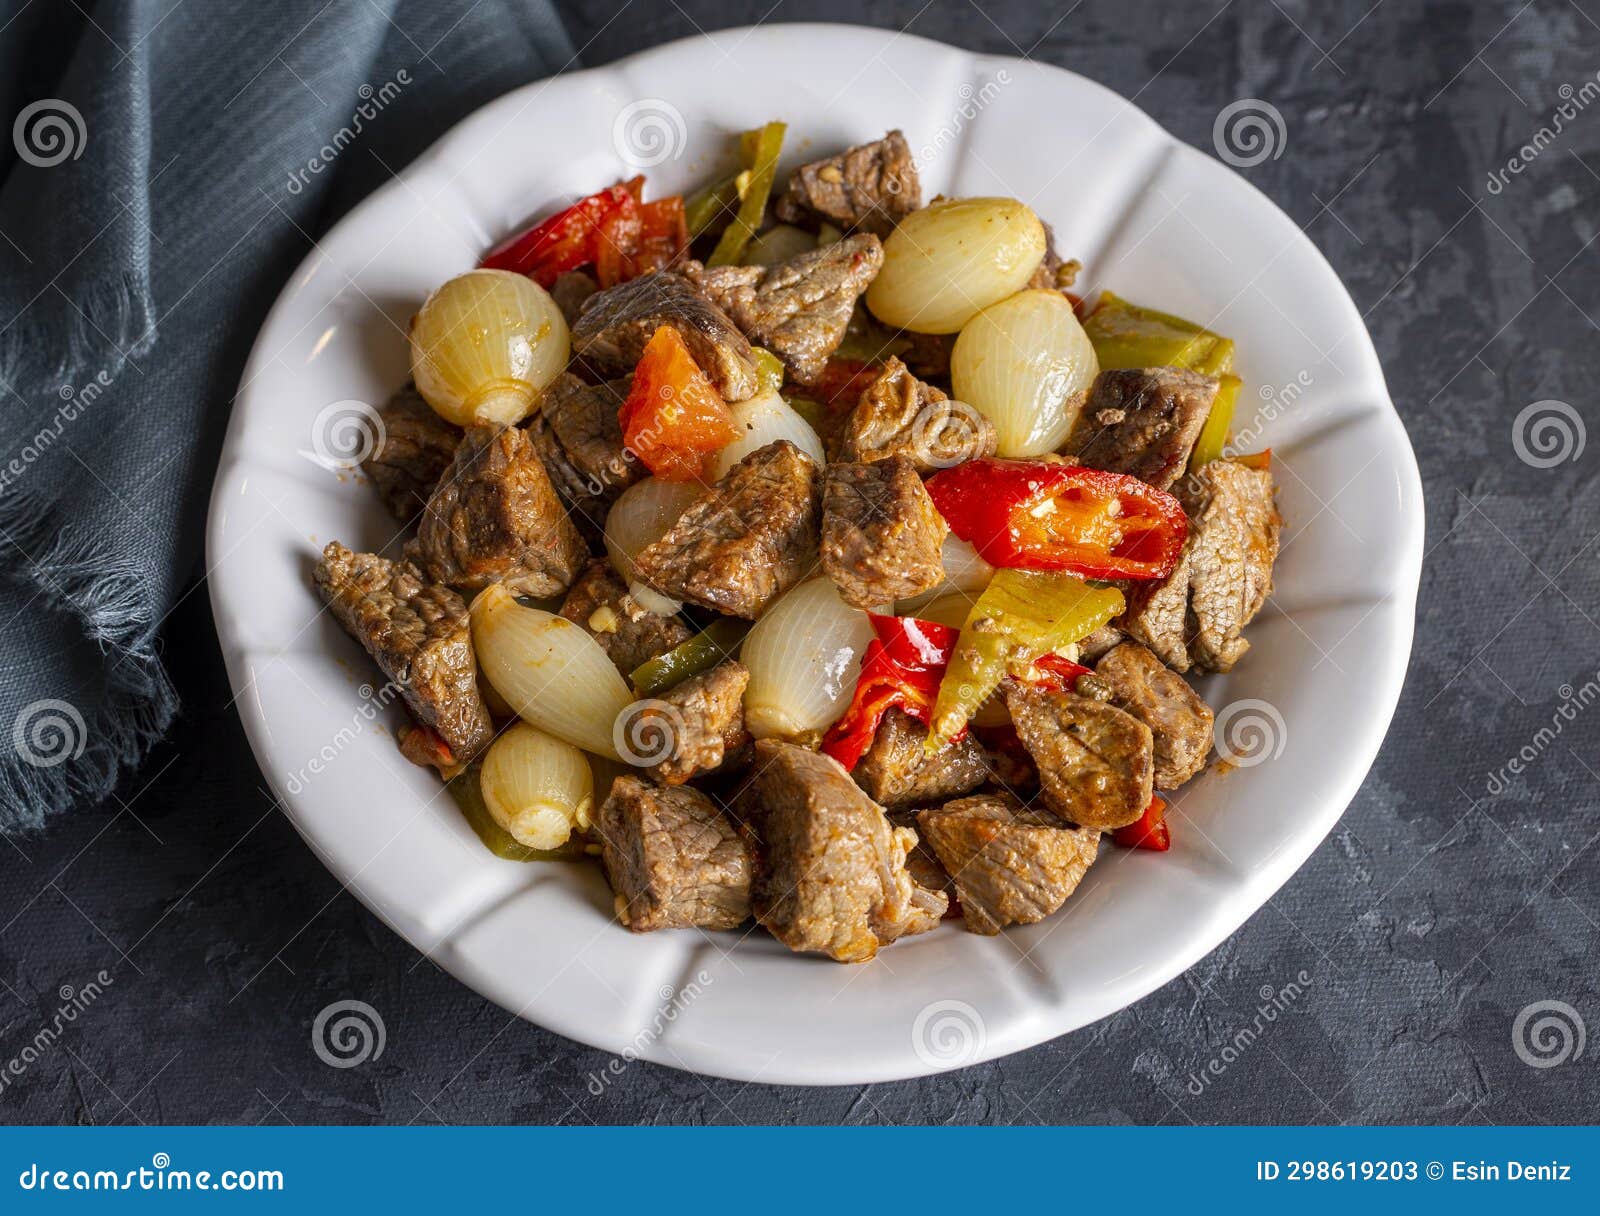 comida tradicional turca con deliciosa carne estofado de cebolla con carne (nombre turco etli sogan yahnisi, et kavurma